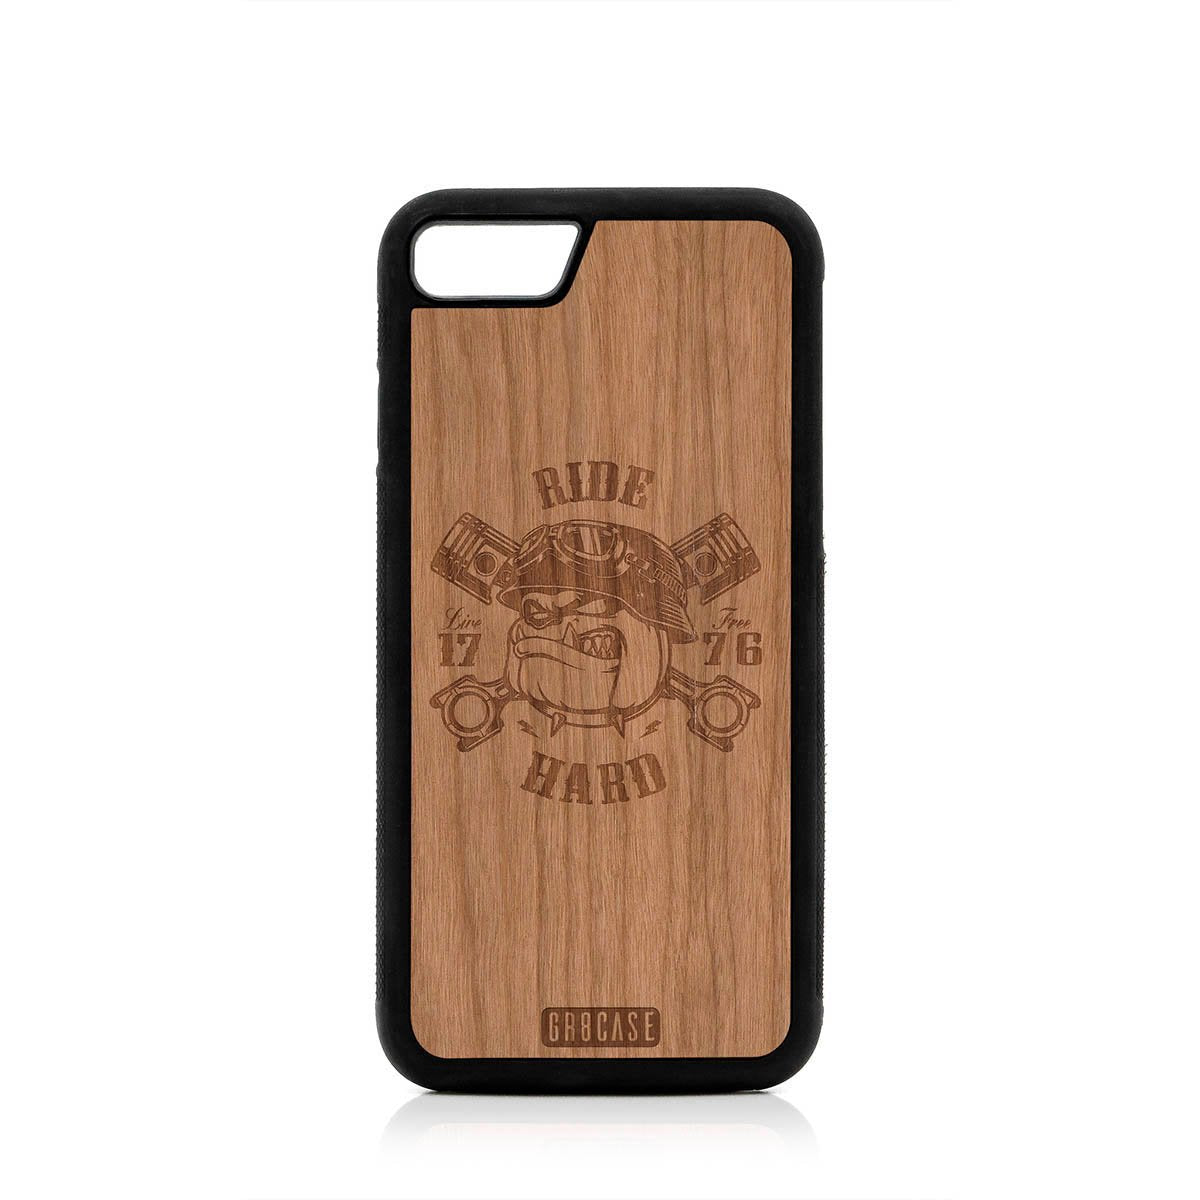 Ride Hard Live Free (Biker Dog) Design Wood Case For iPhone SE 2020 by GR8CASE